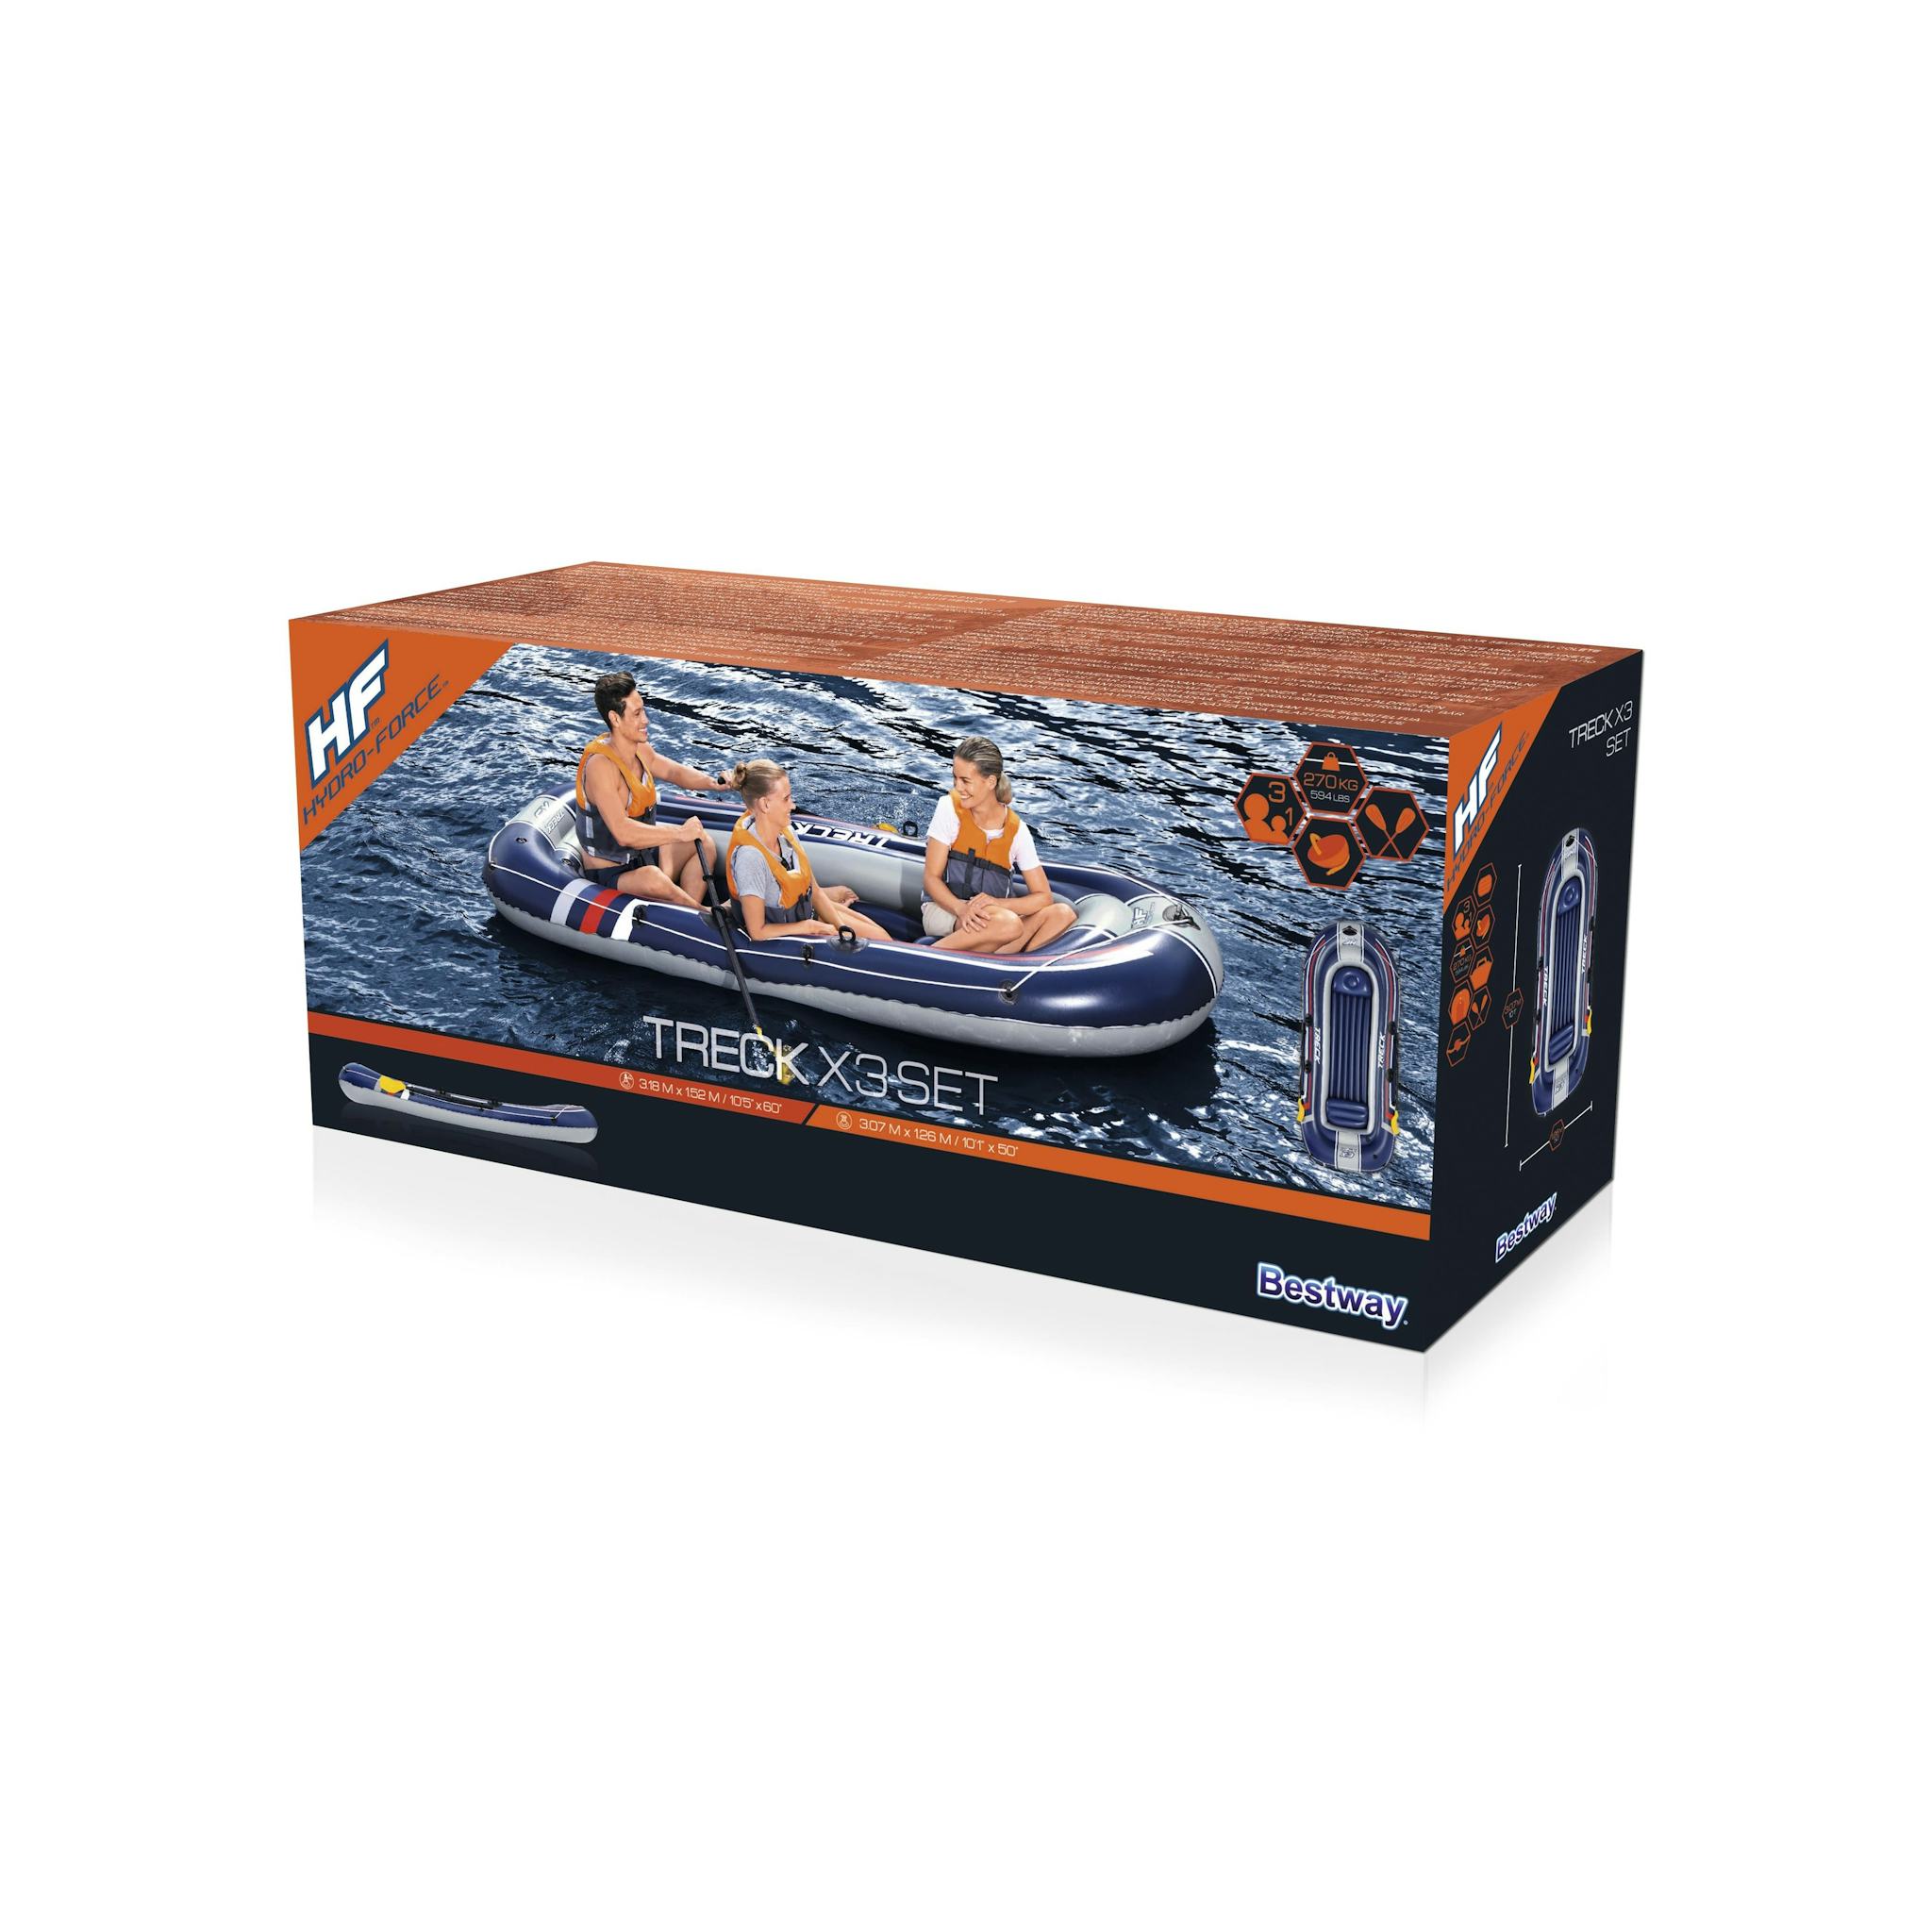 Sports d'eau Bateau gonflable Treck X3 set Hydro-Force™, 307 x 126 cm, 3 adultes et 1 enfant, 2 pagaies et une pompe à pied Bestway 8